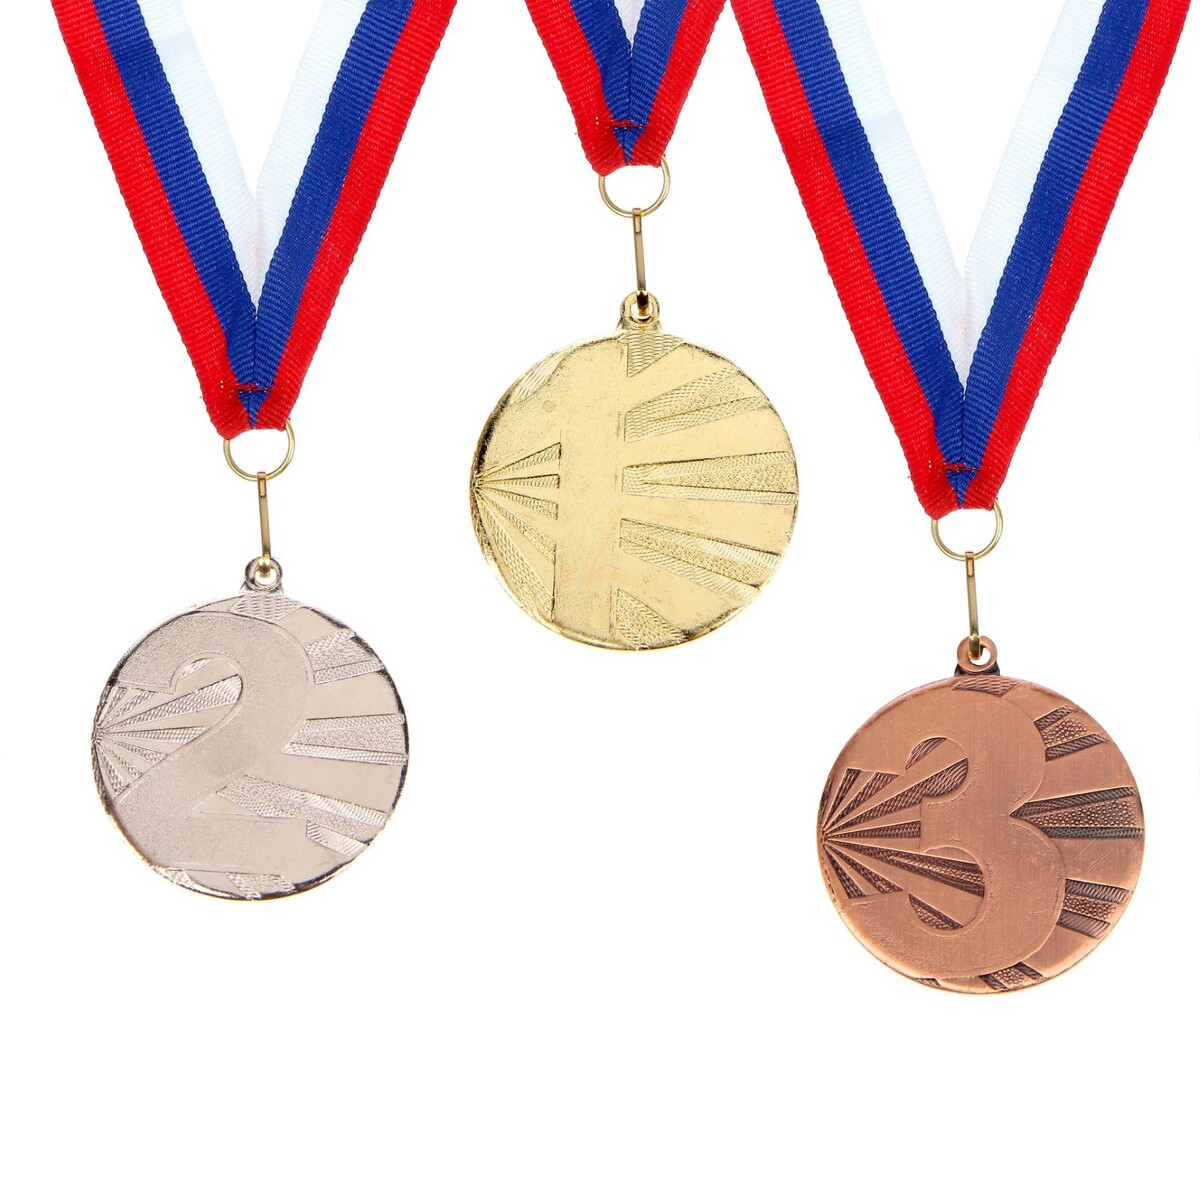 Медаль призовая 045 диам 4,5 см. 1 место. цвет зол. с лентой Командор